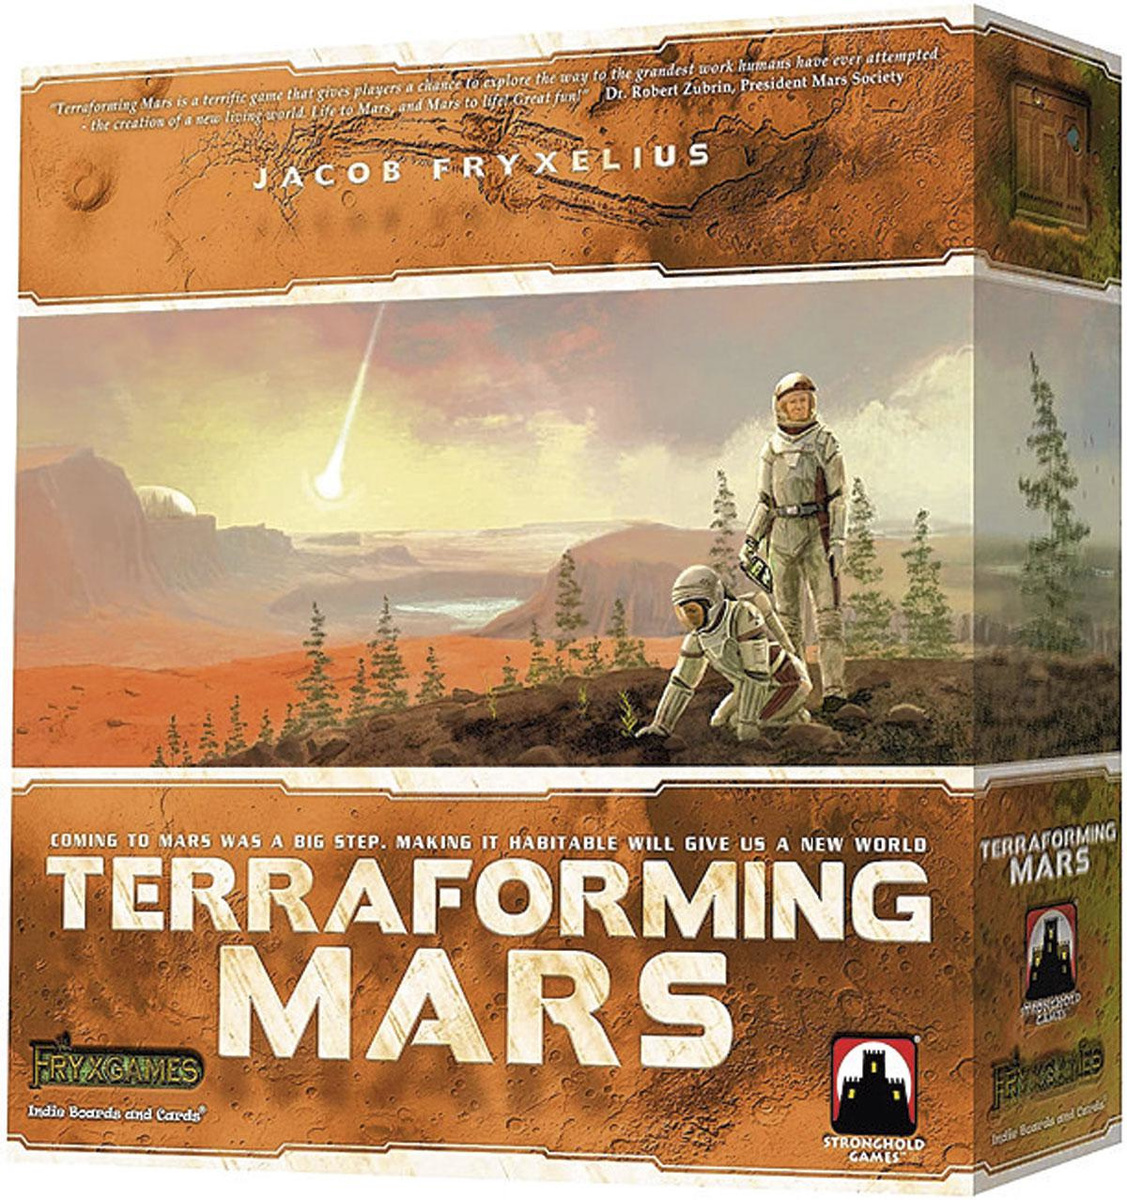 Terraforming Mars, pour tenter de rendre la planète rouge habitable, 54,99 euros, bol.com, photos: sdp